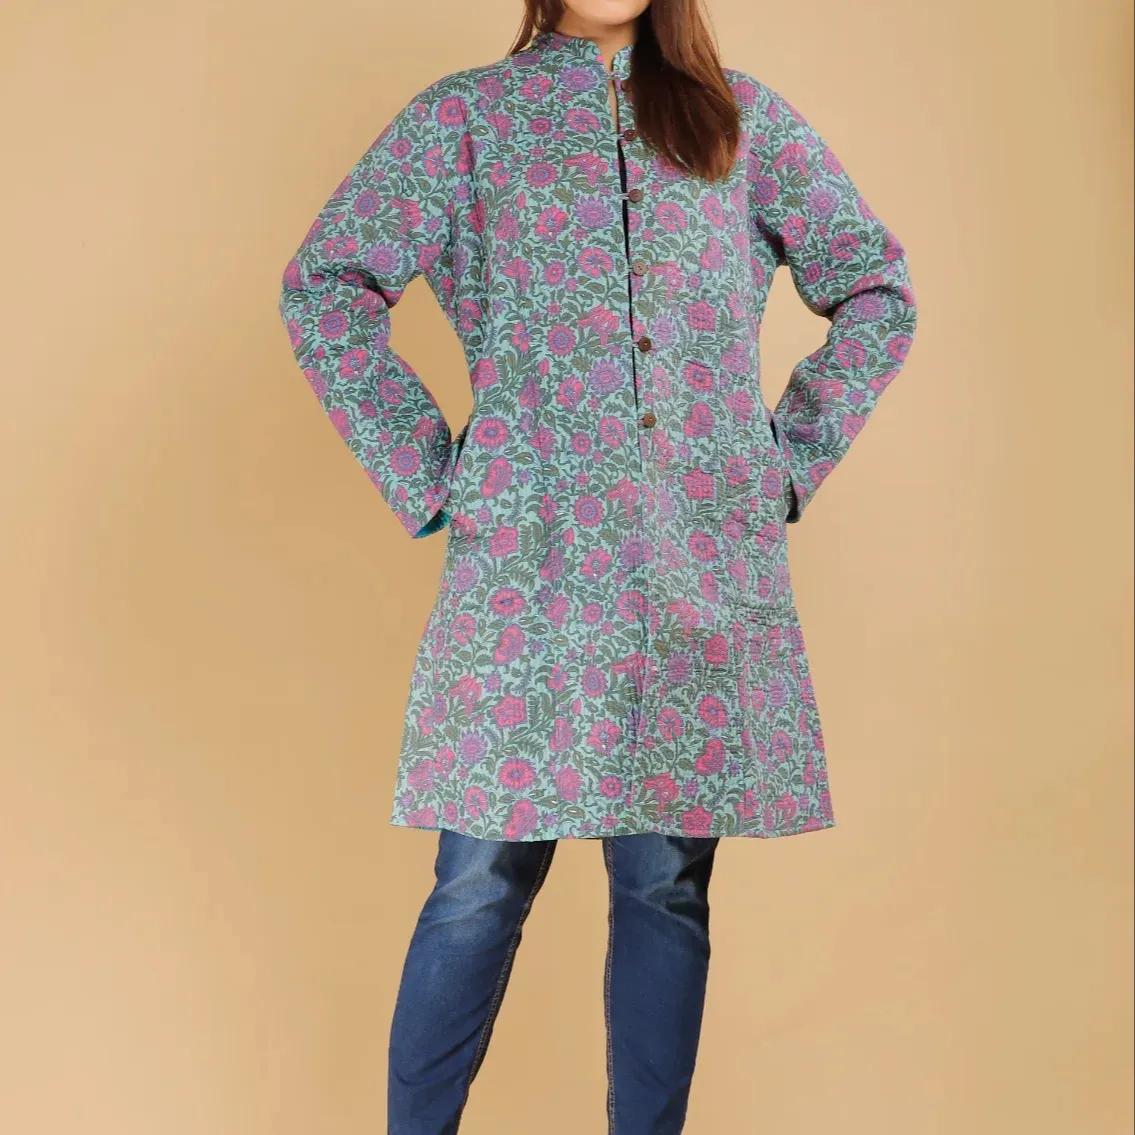 Kadın pamuk kapitone ceket-shop online benzersiz tasarım ile kadınlar için geri dönüşümlü pamuk kapitone ceket